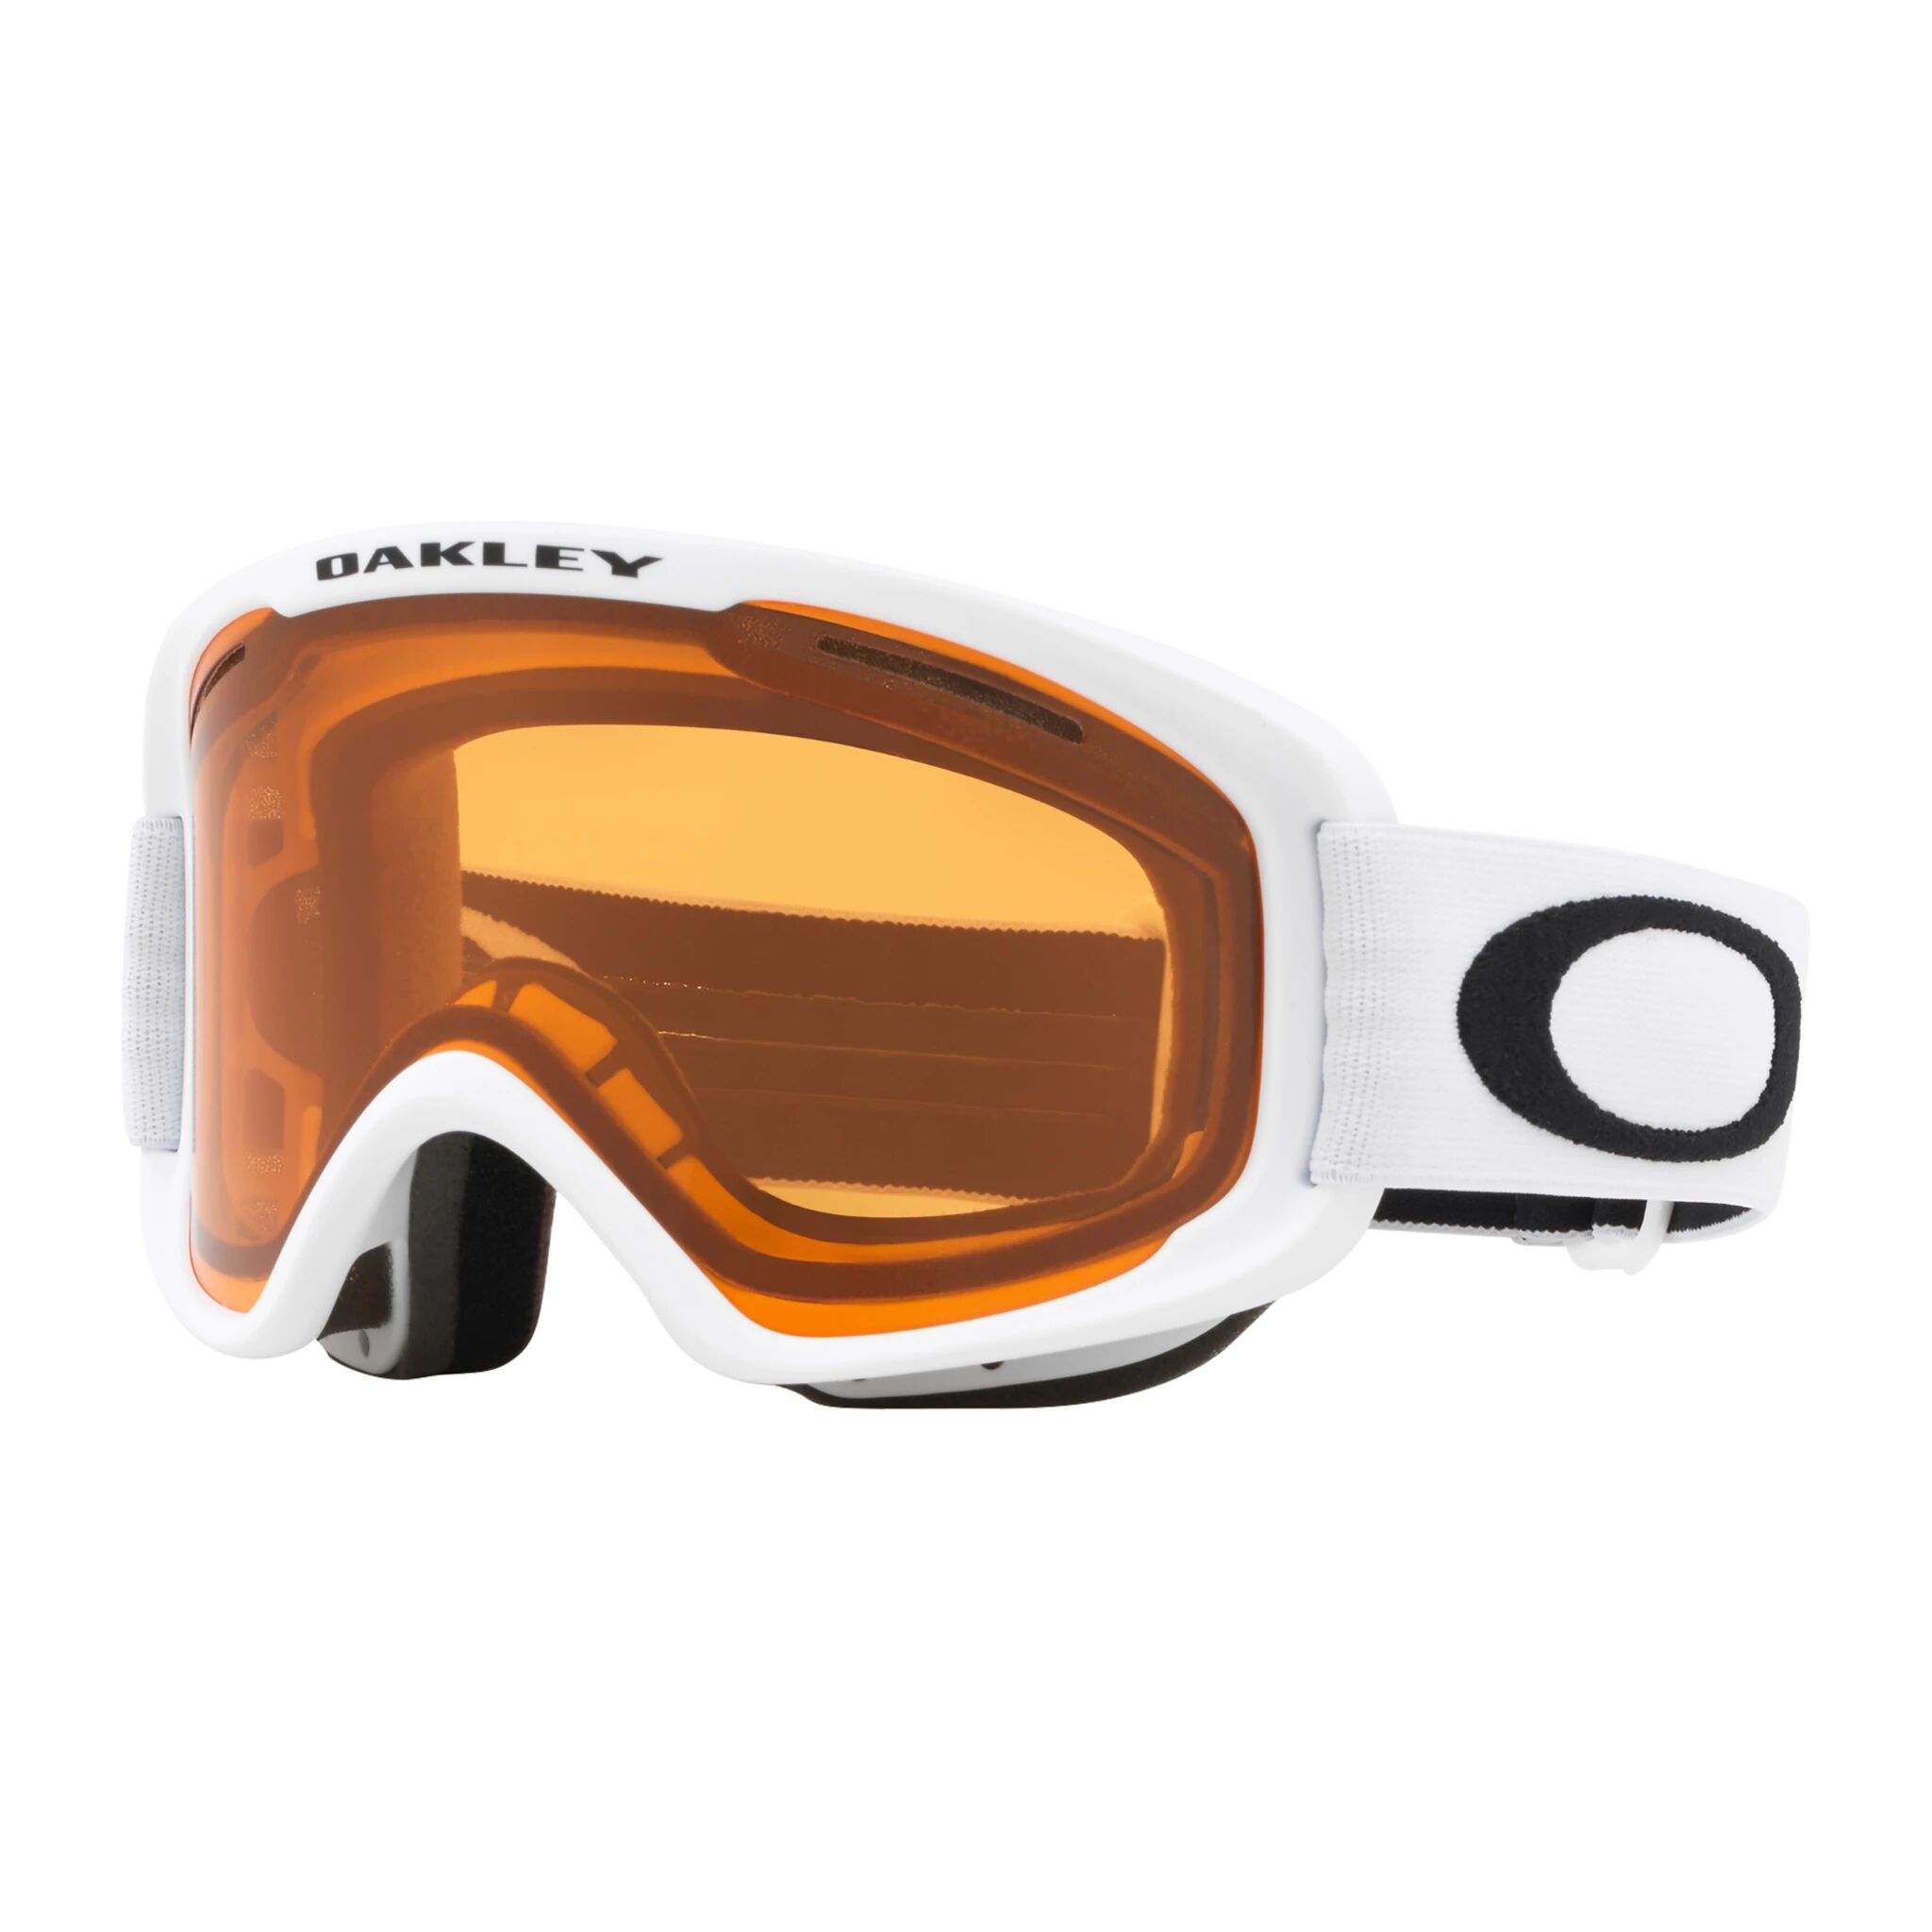 Oakley Goggles O-Frame 2.0 Pro M Matte White Persimmon 21/22, alpinbrille One Size White w Persimmon